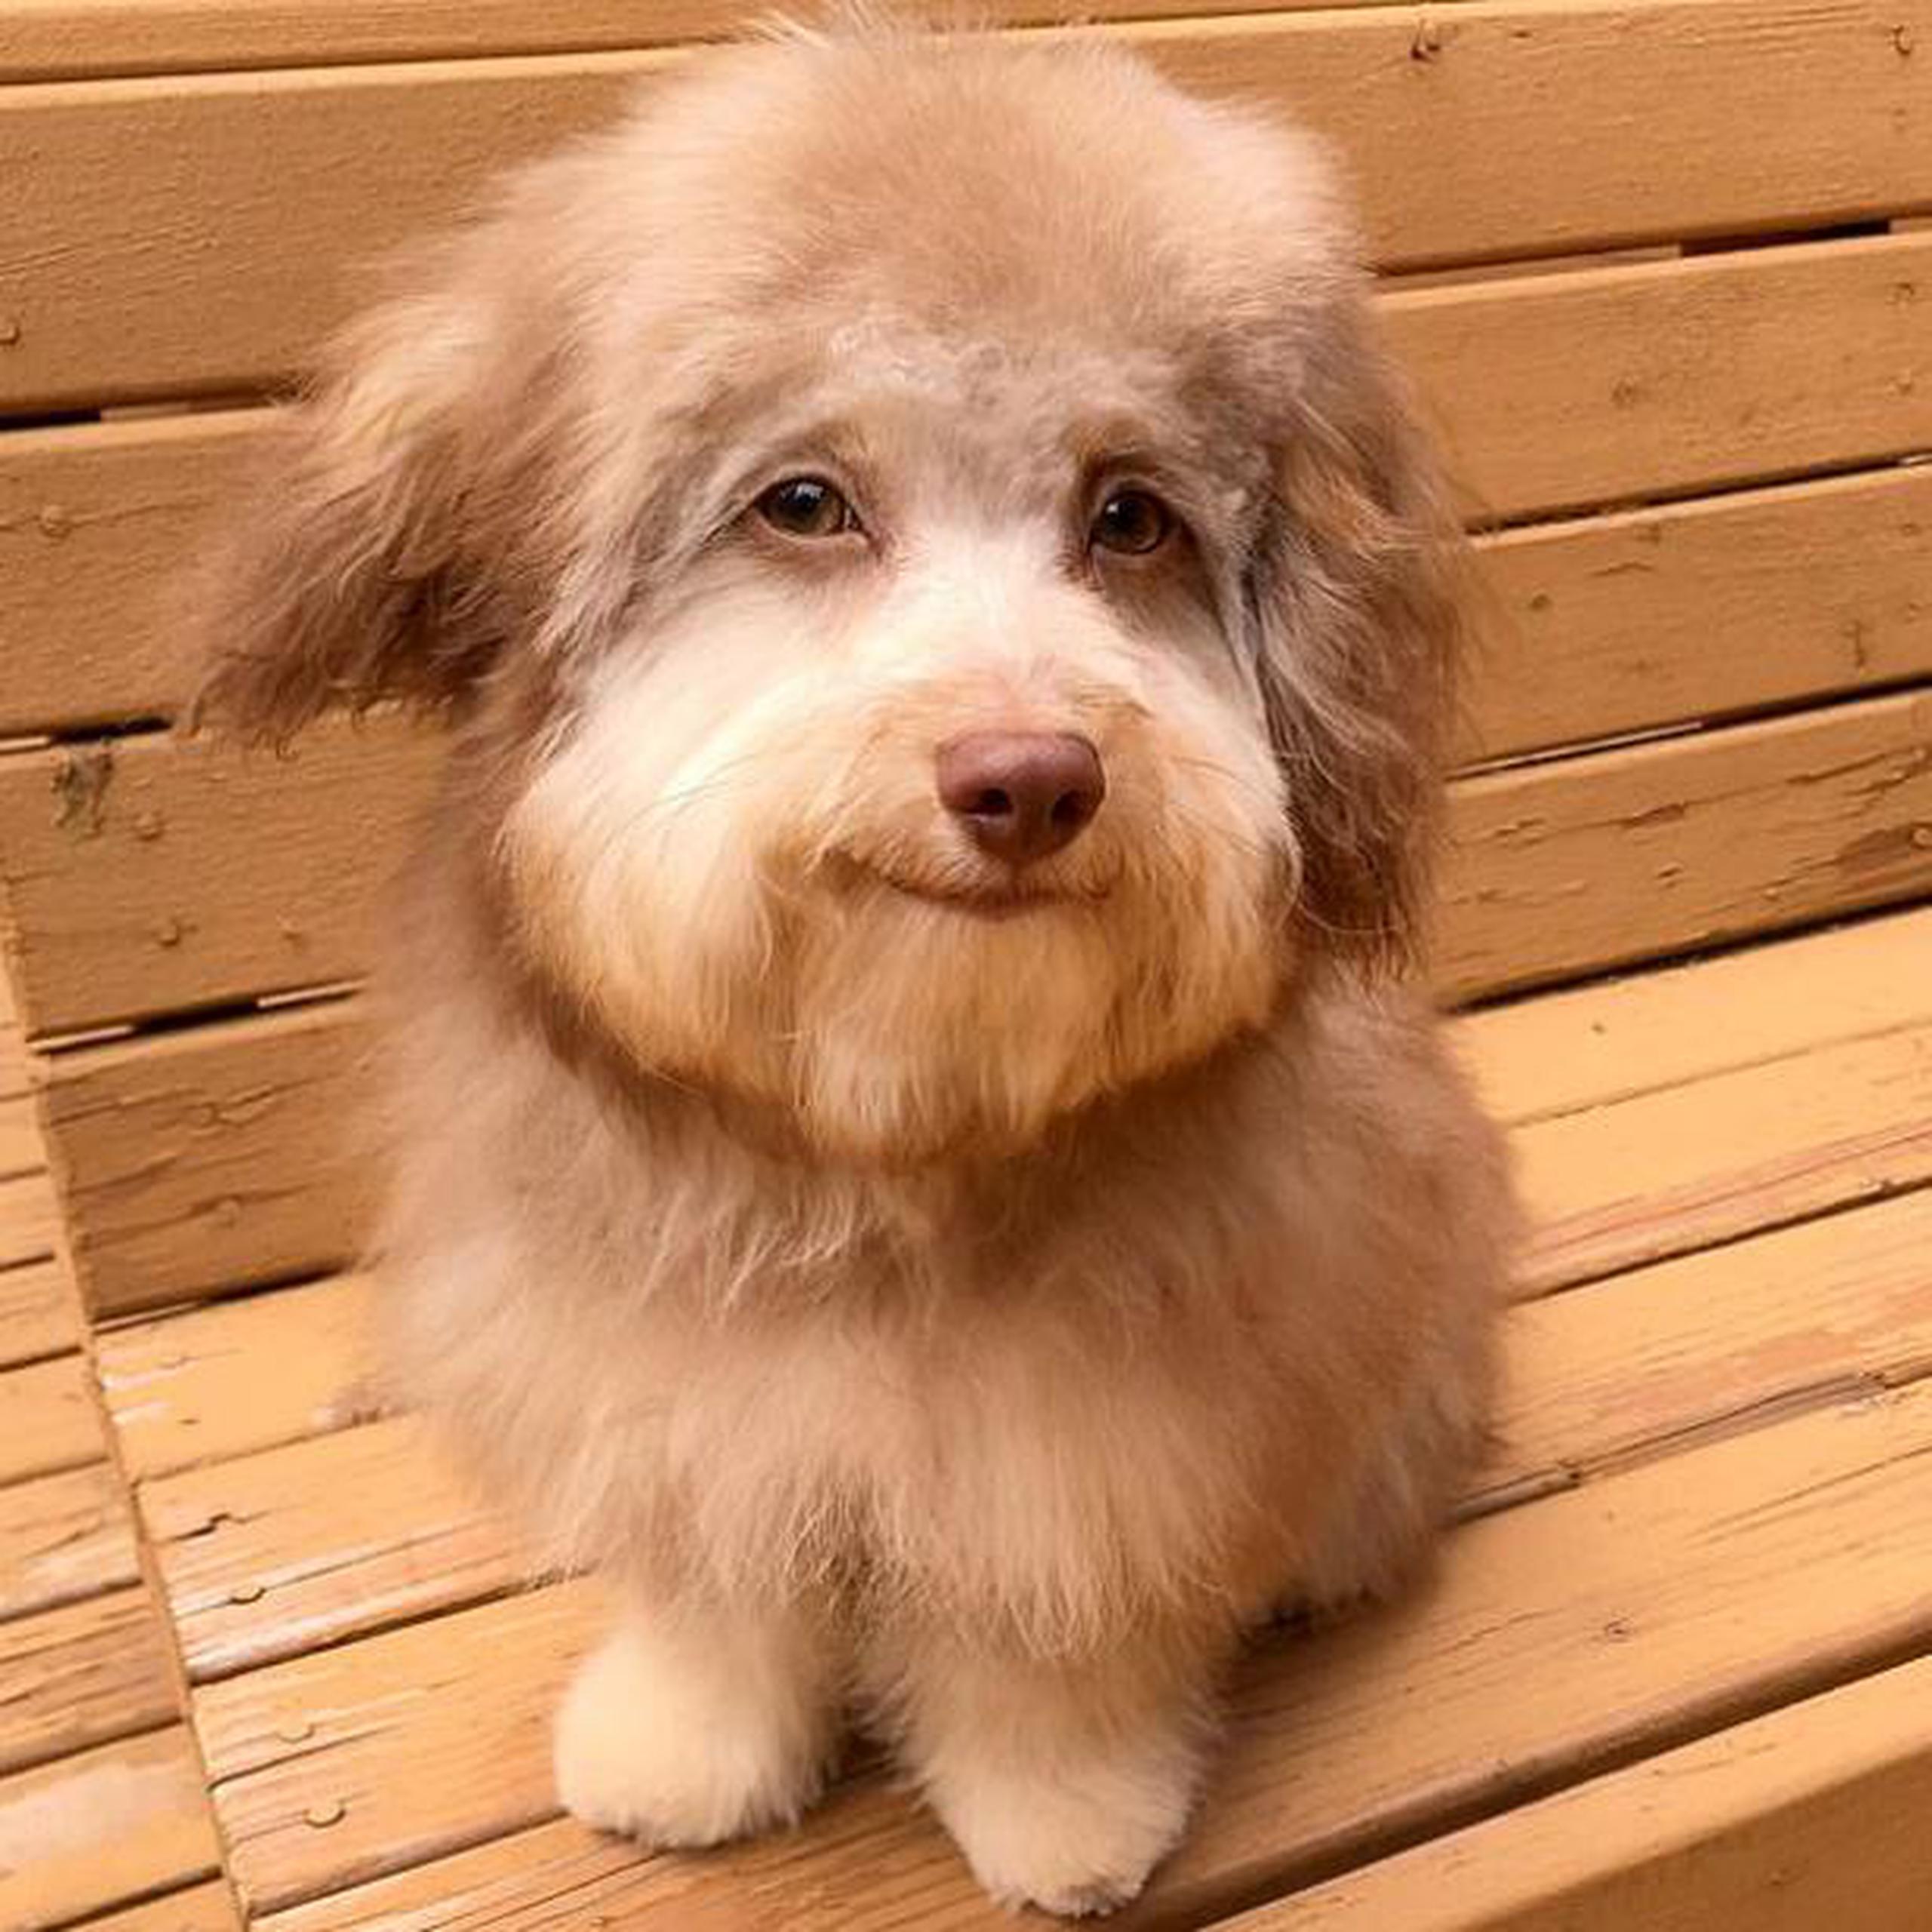 El perro y su expresión adorable han logrado miles de reacciones en las redes.  (Instagram)